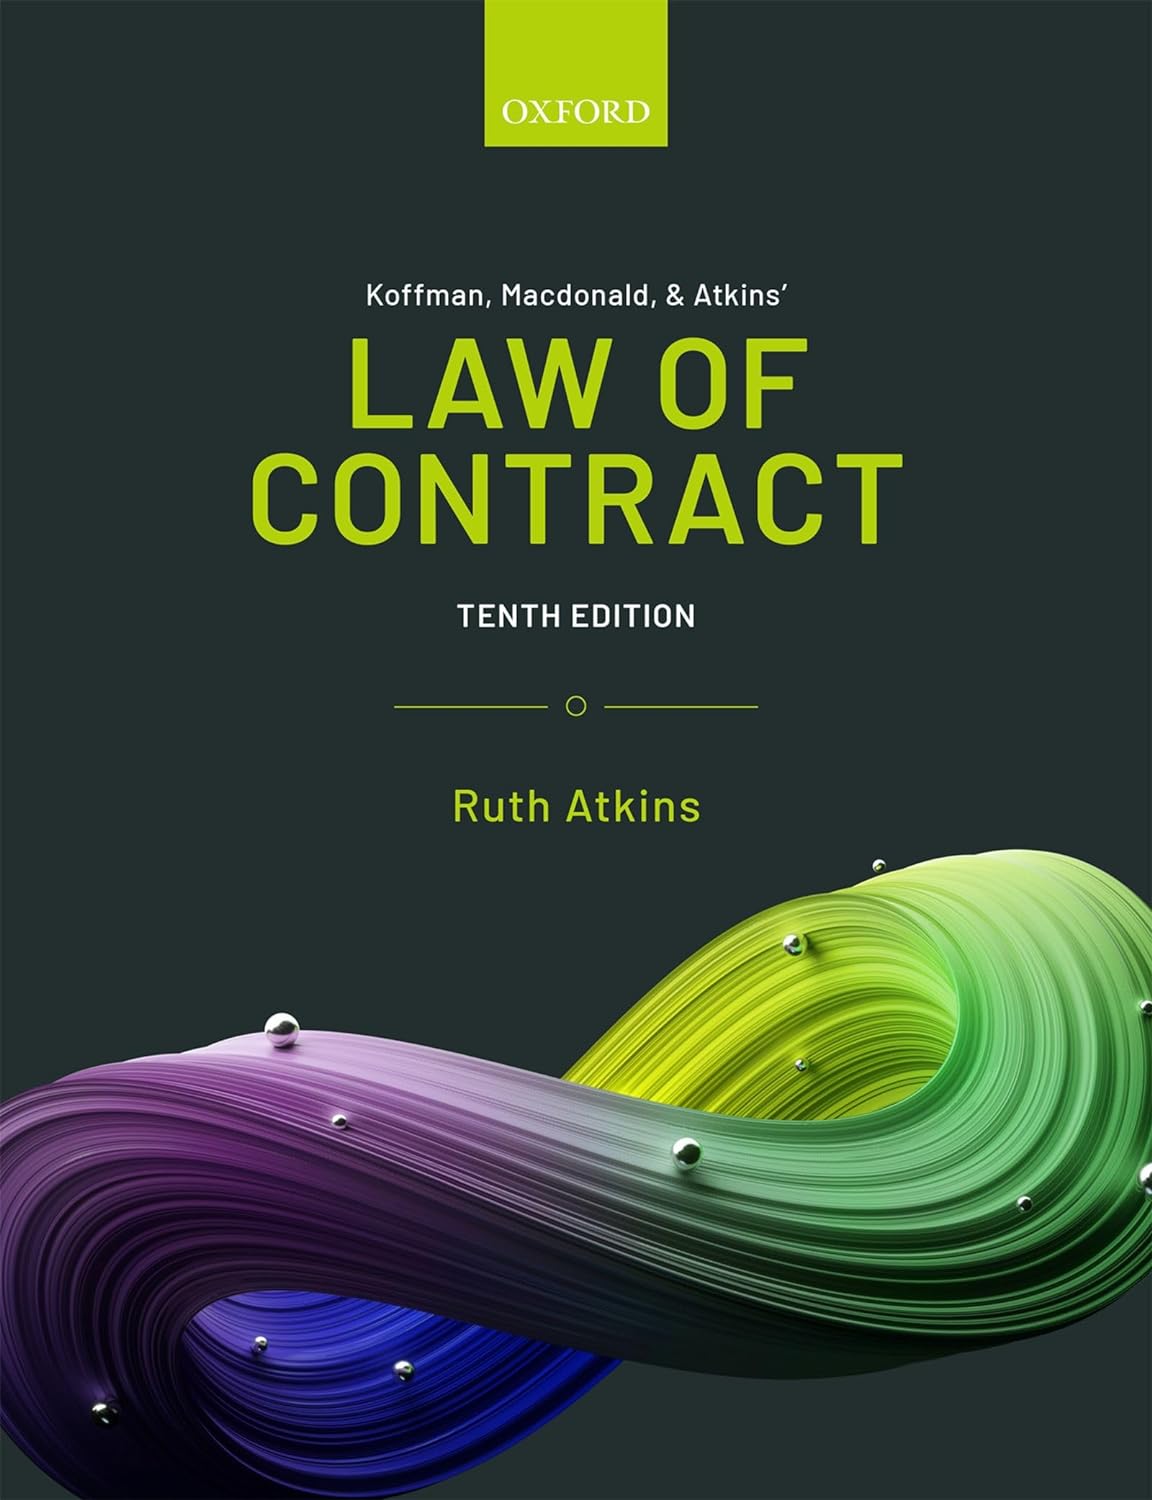 Koffman, Prawo umów Macdonalda i Atkinsa, wydanie 10